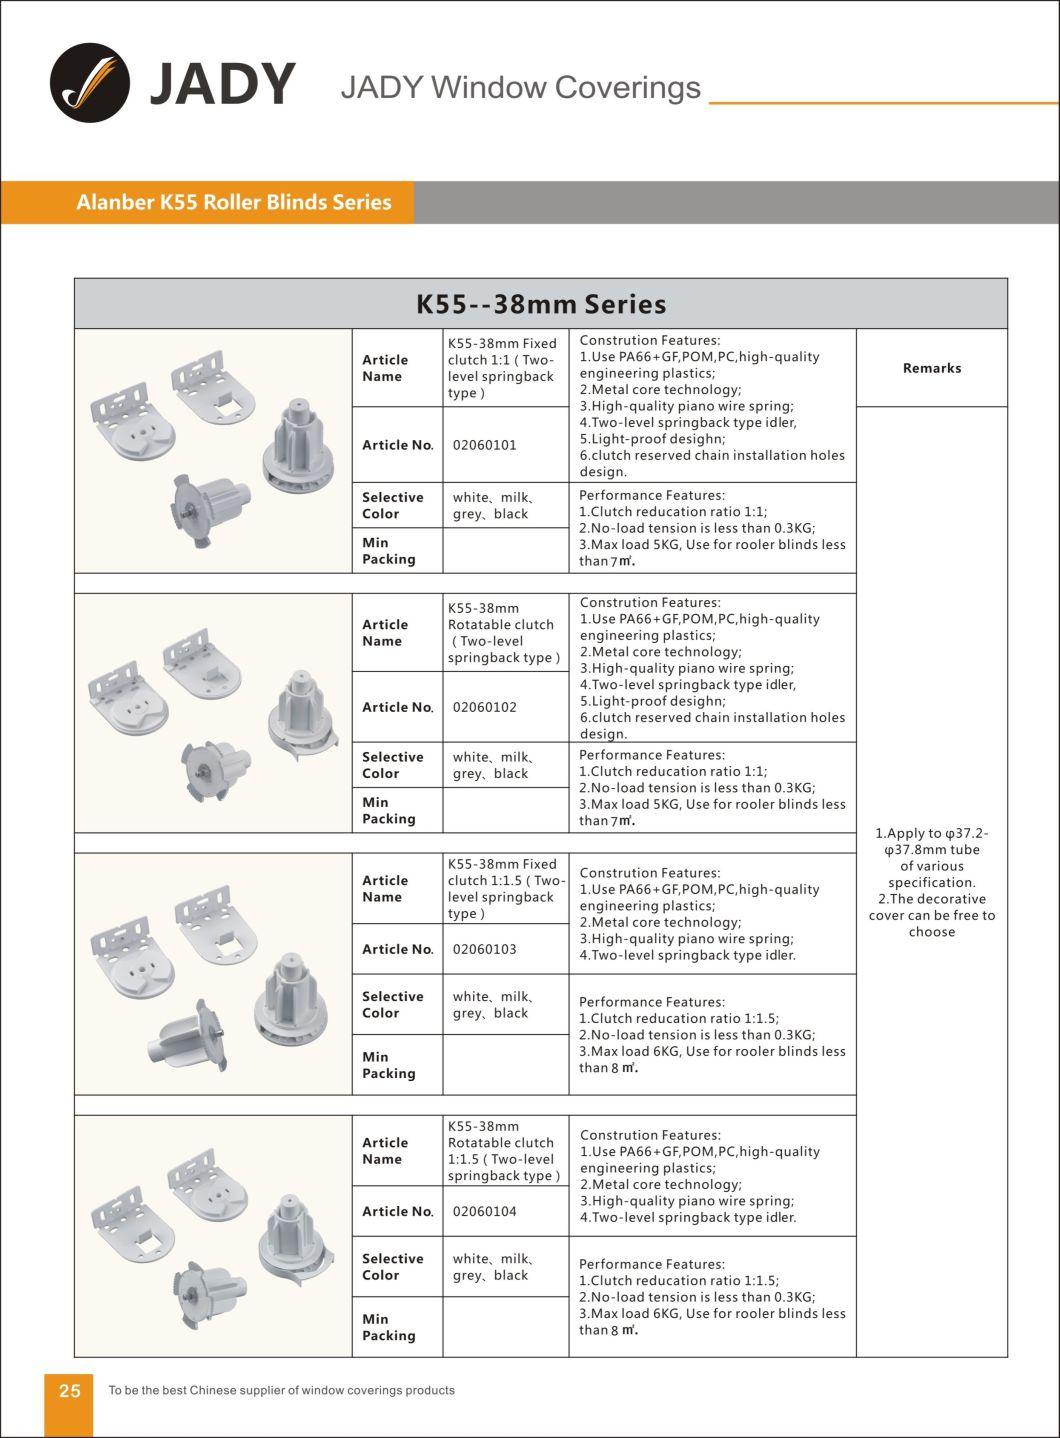 K55-38mm Fixed Deceleration Clutch Roller Blinds Components, for Roller Blinds